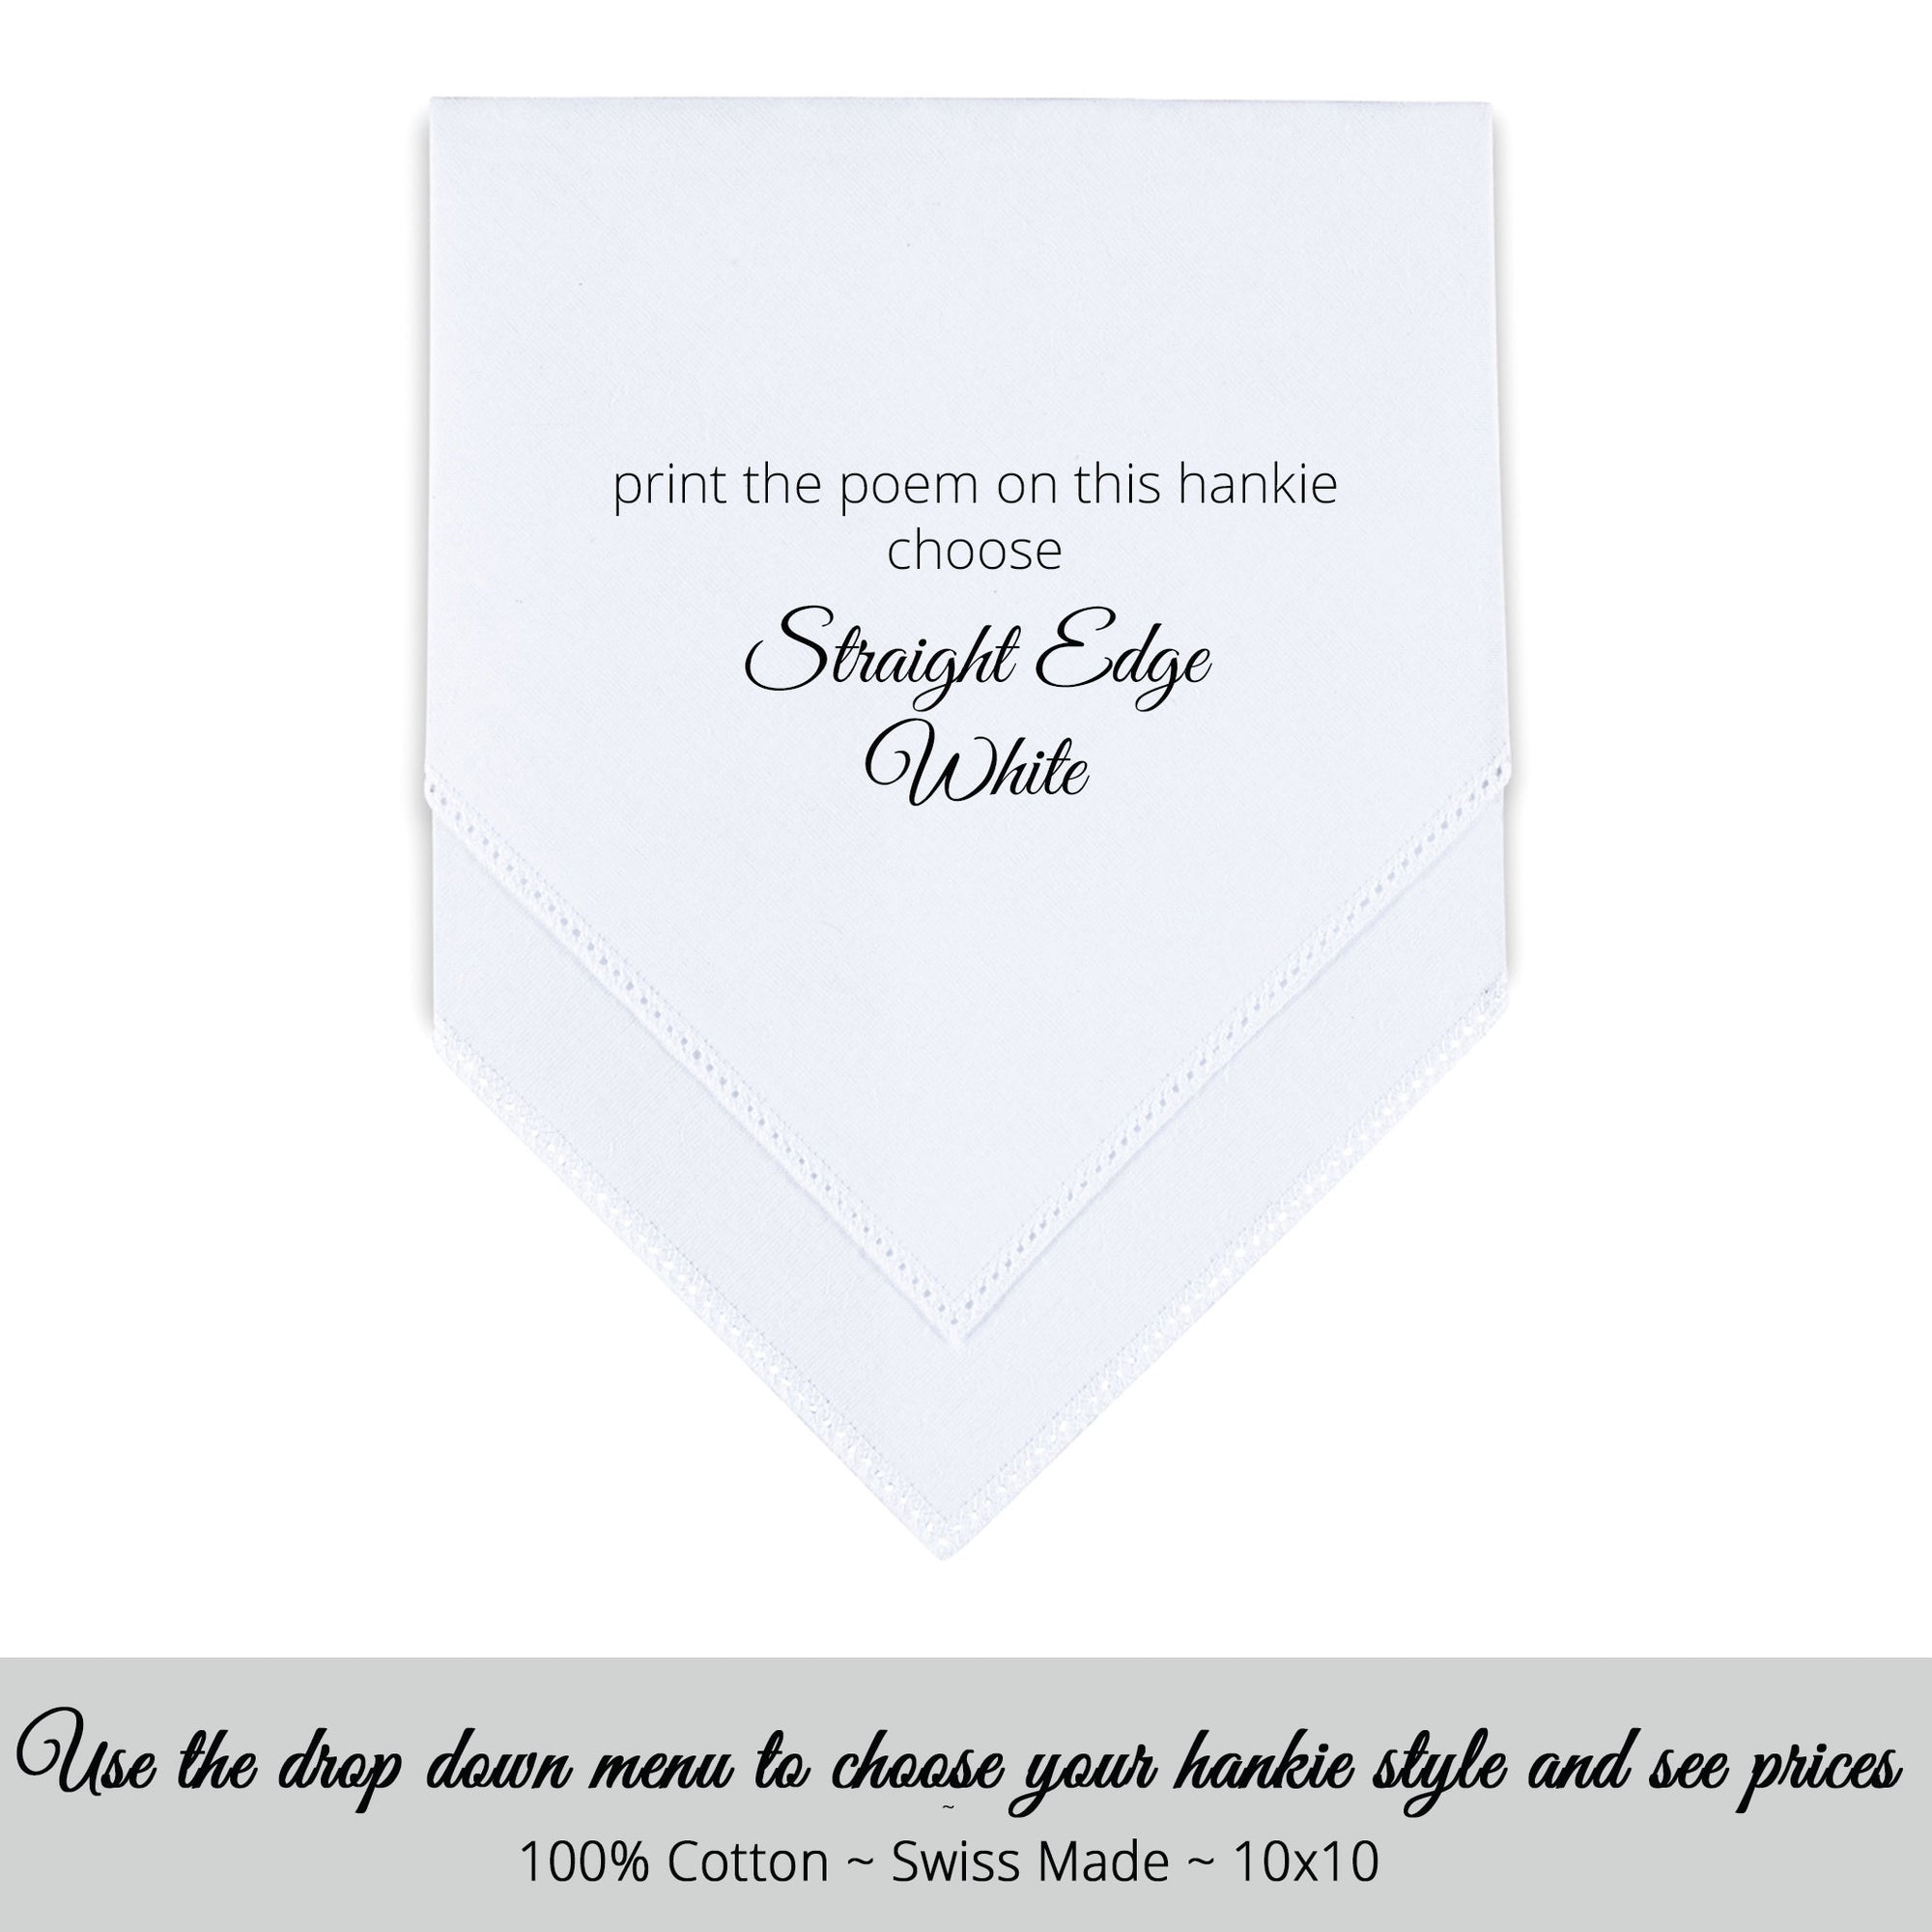 Wedding Handkerchief white straight edge personalized wedding handkerchief for poem printed hankie